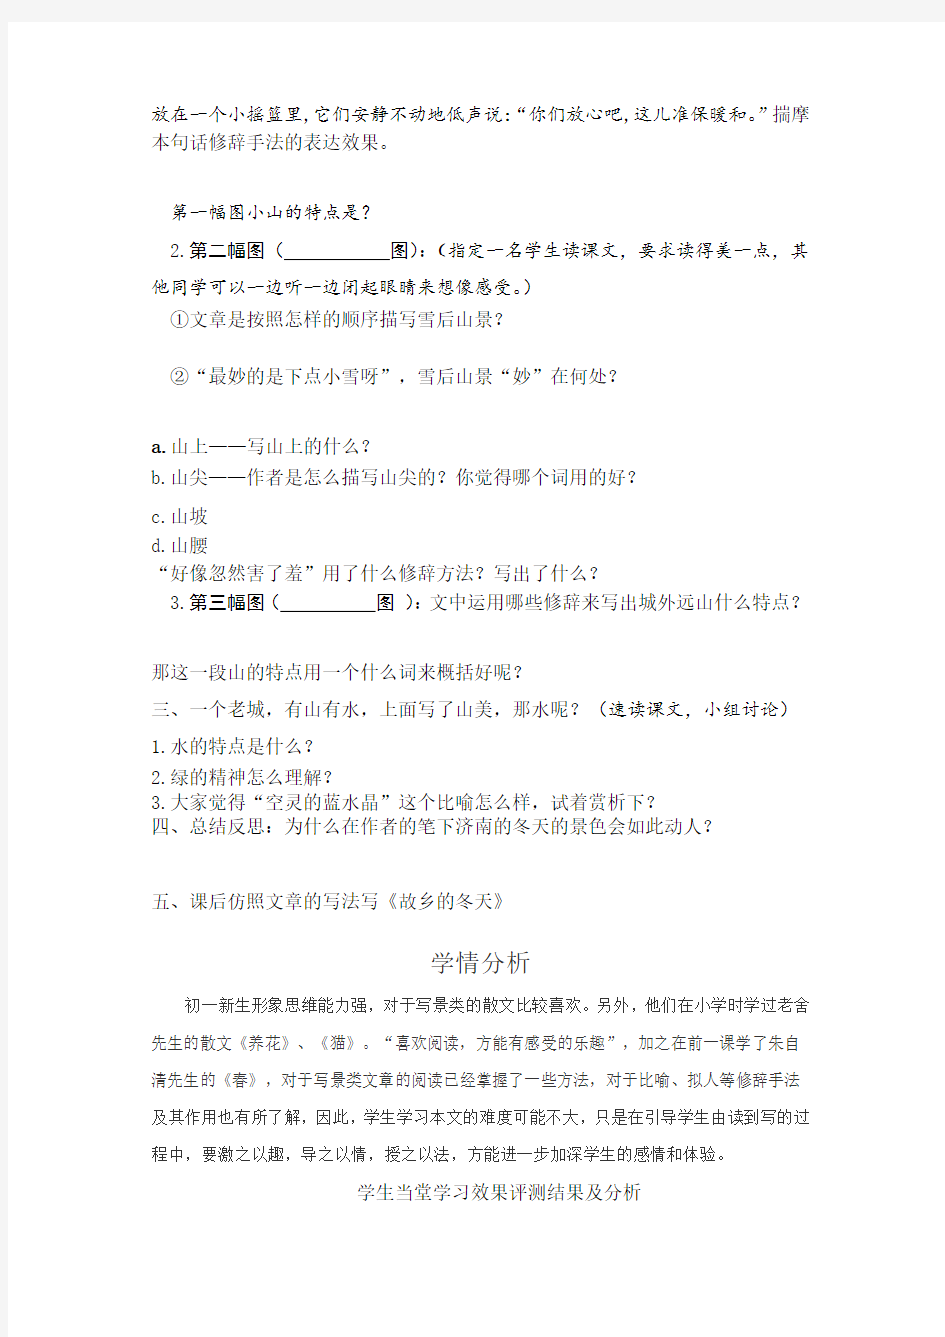 初中语文_12 济南的冬天教学设计学情分析教材分析课后反思